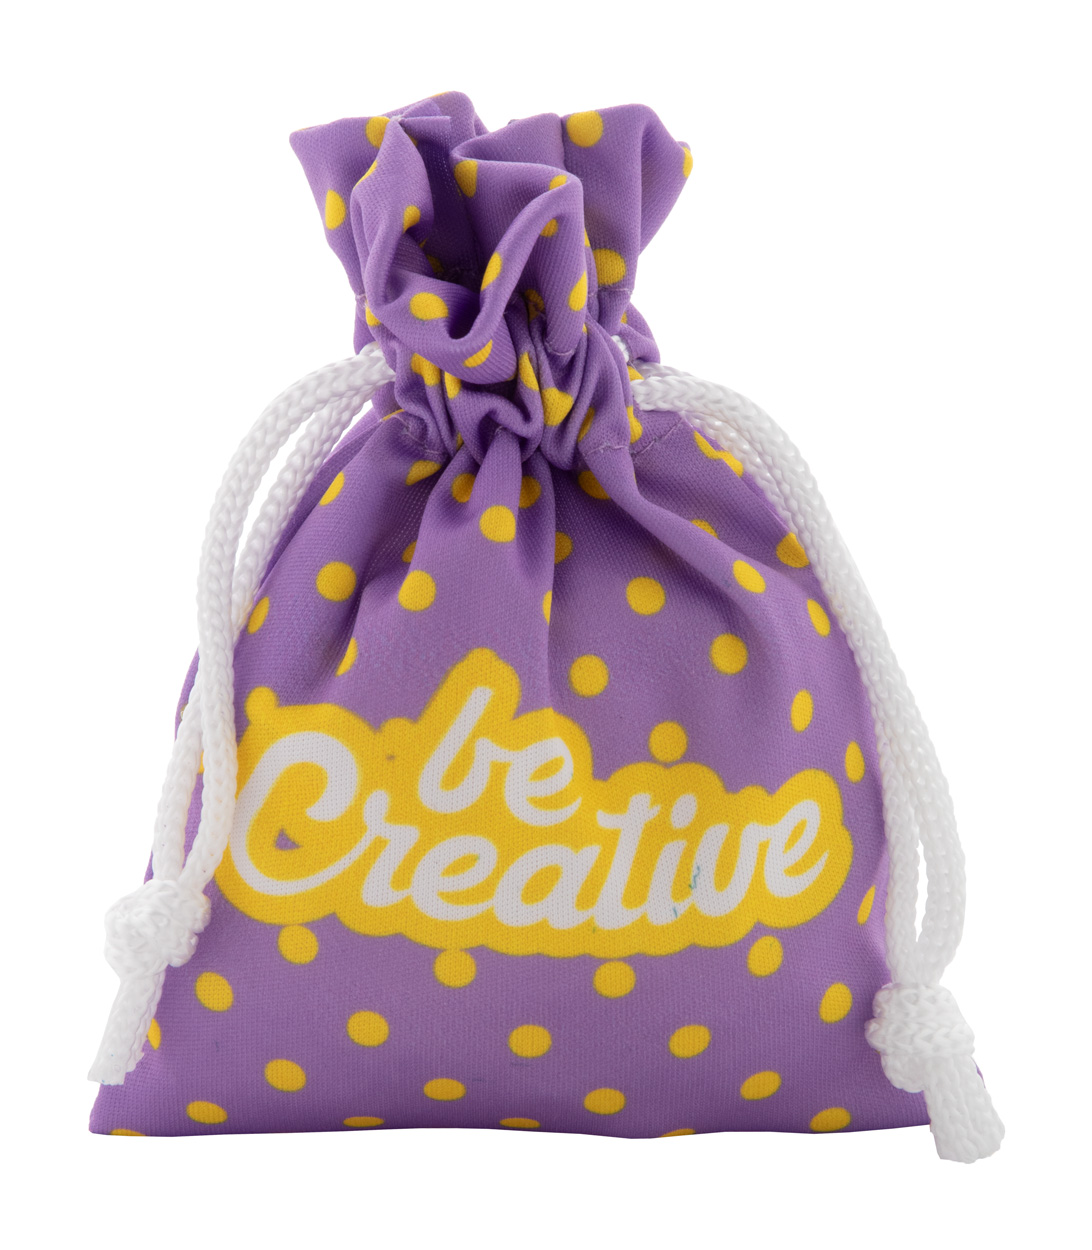 SuboGift S custom gift bag, small - white